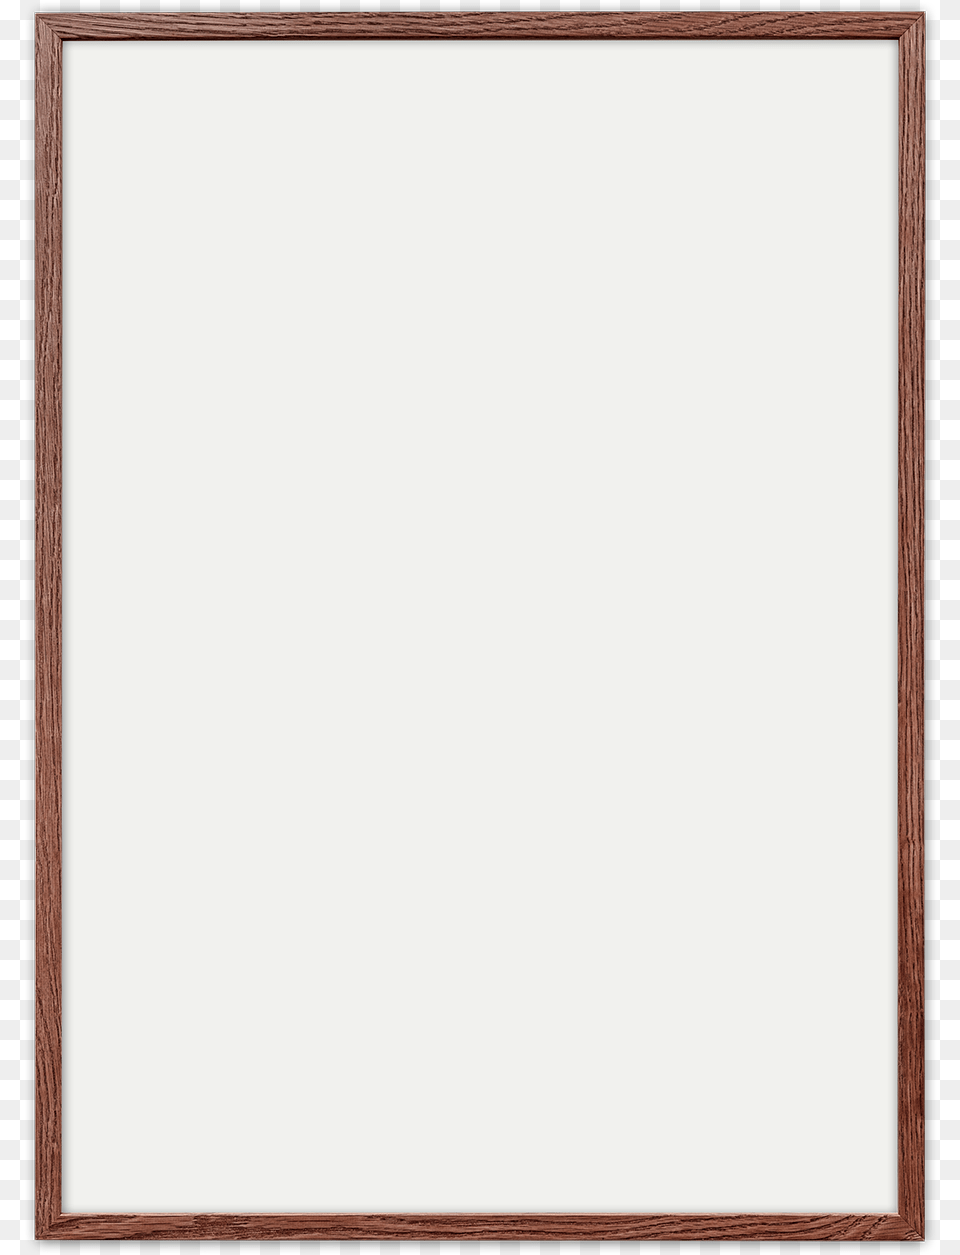 Dark Oak Frames Picture Frame, White Board Png Image